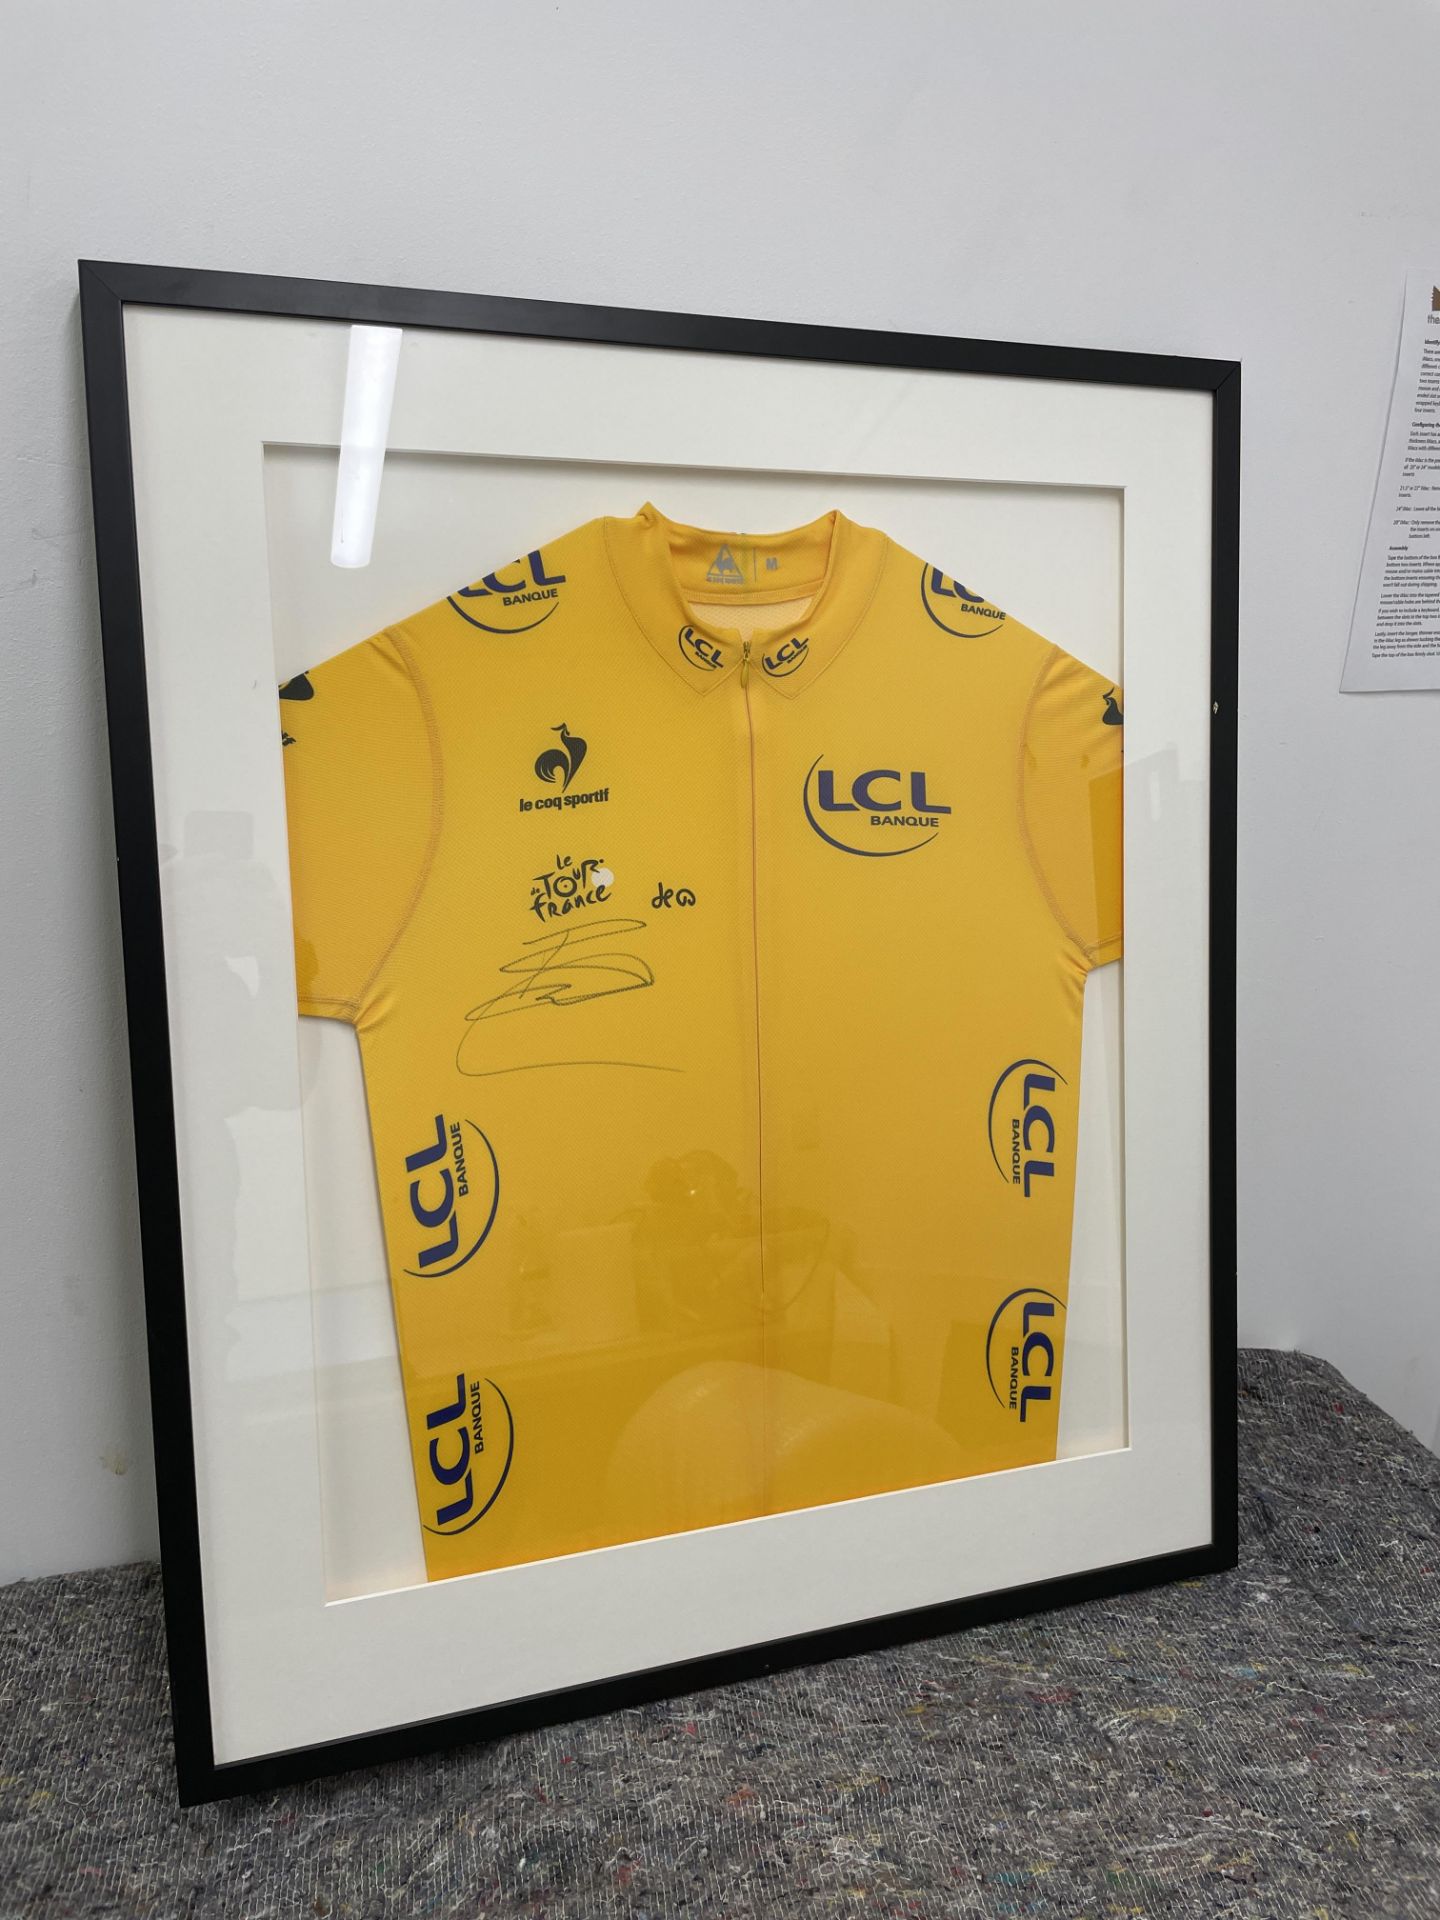 Bradley Wiggins Framed & Signed LCL Banque Le Coq Sportif Le Tour De France 2012 Yellow Jersey. Winn - Image 2 of 3